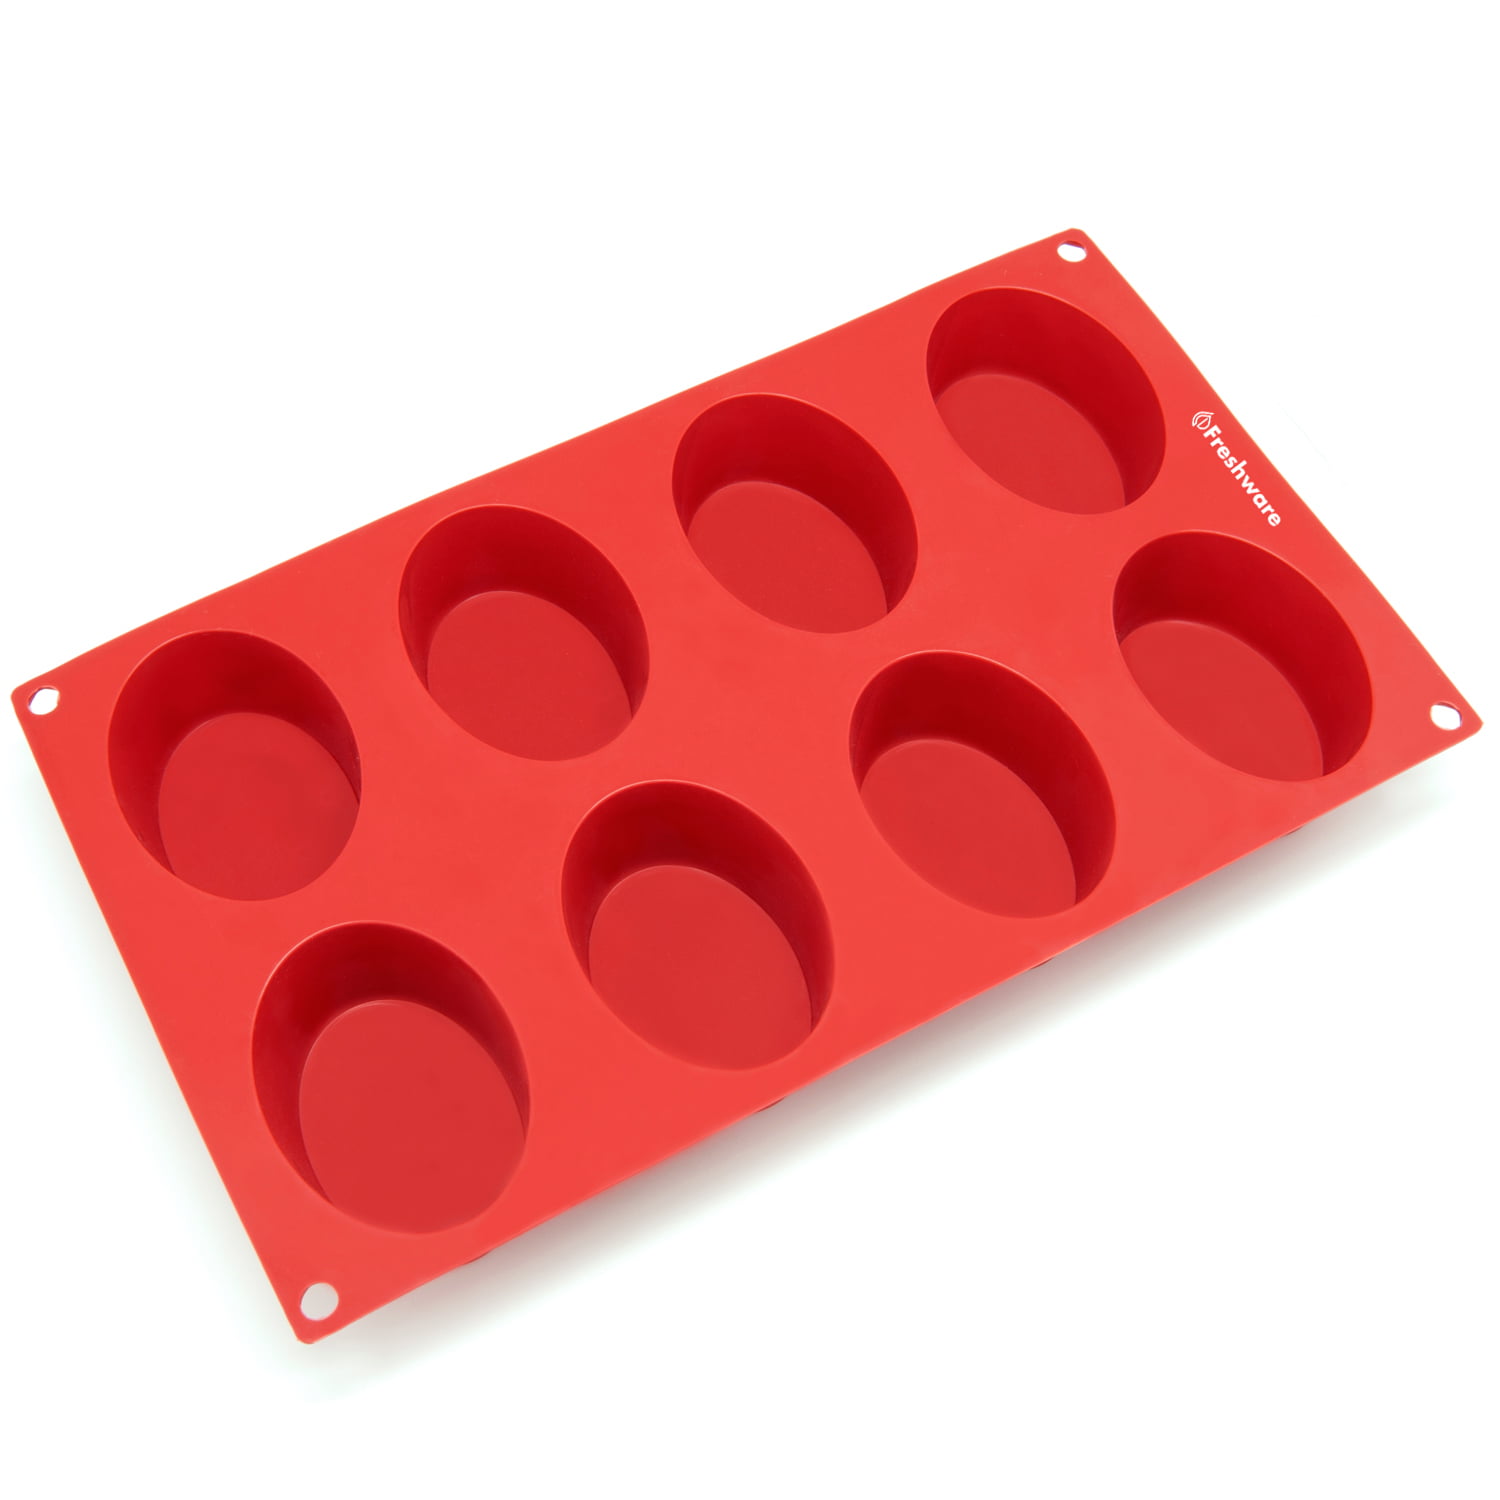 Freshware 24-Cavity Silicone Financier Mold - Red